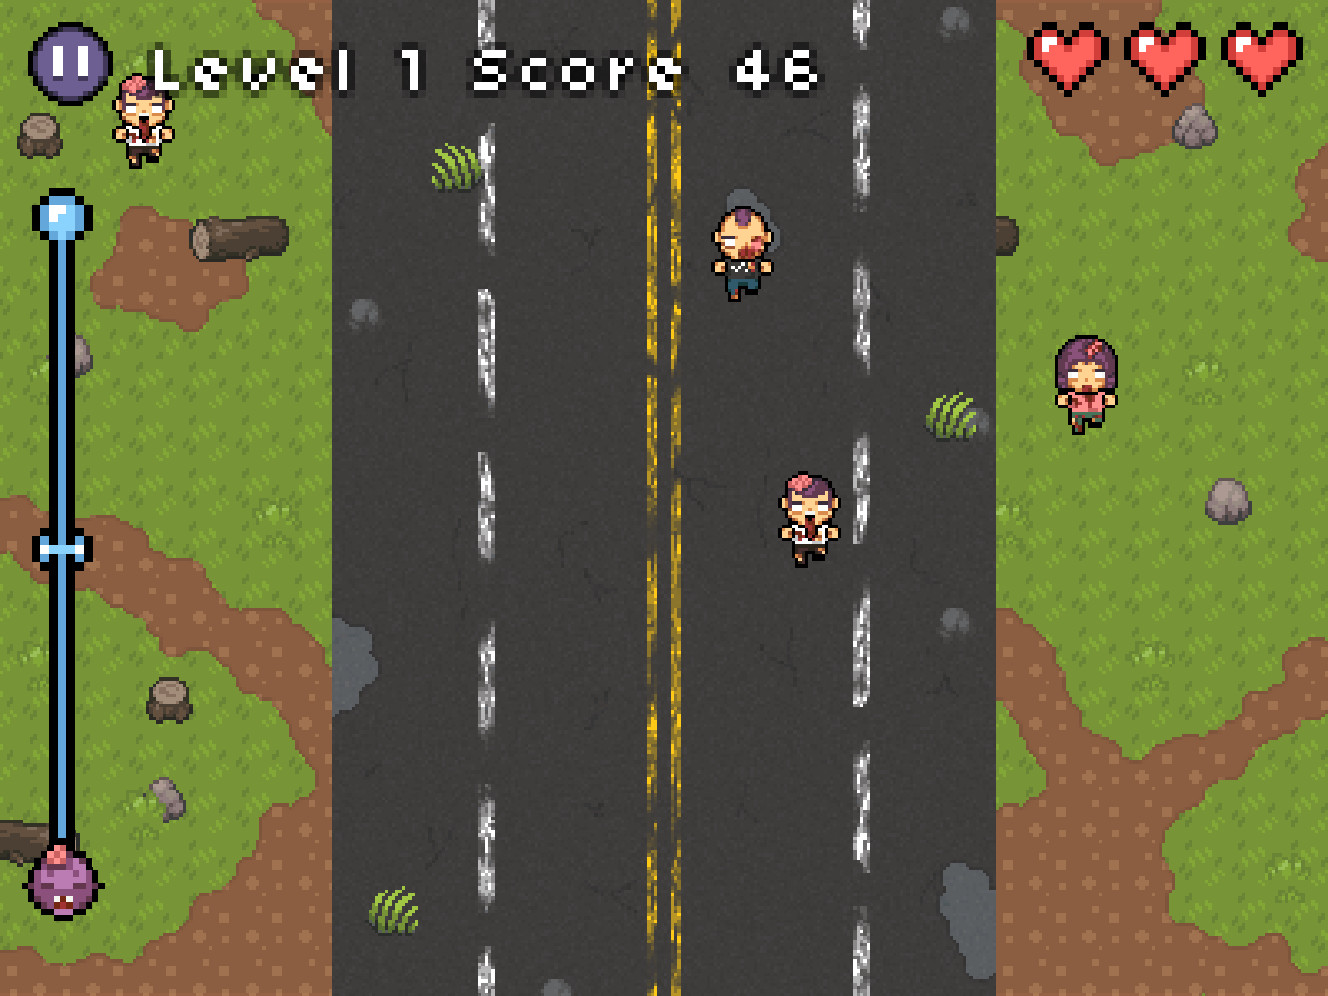 Pixel Zombie screenshot